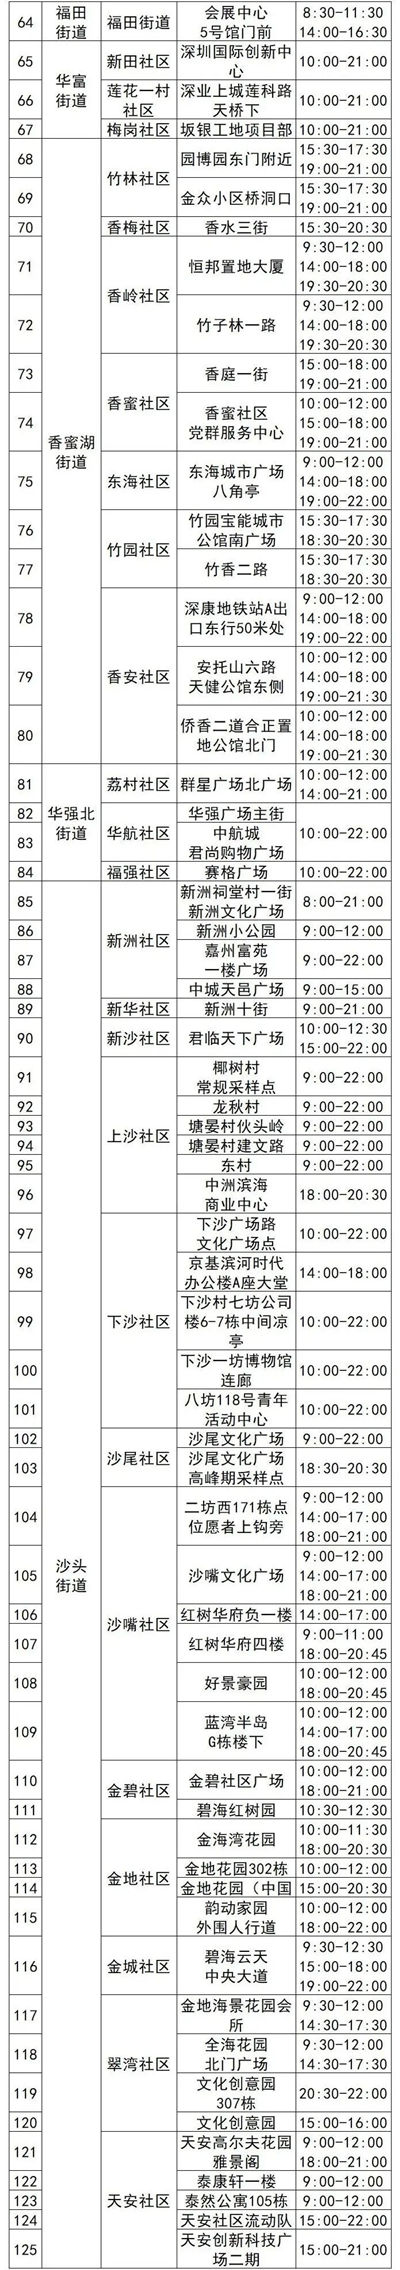 4月20日福田区免费核酸采样点名单